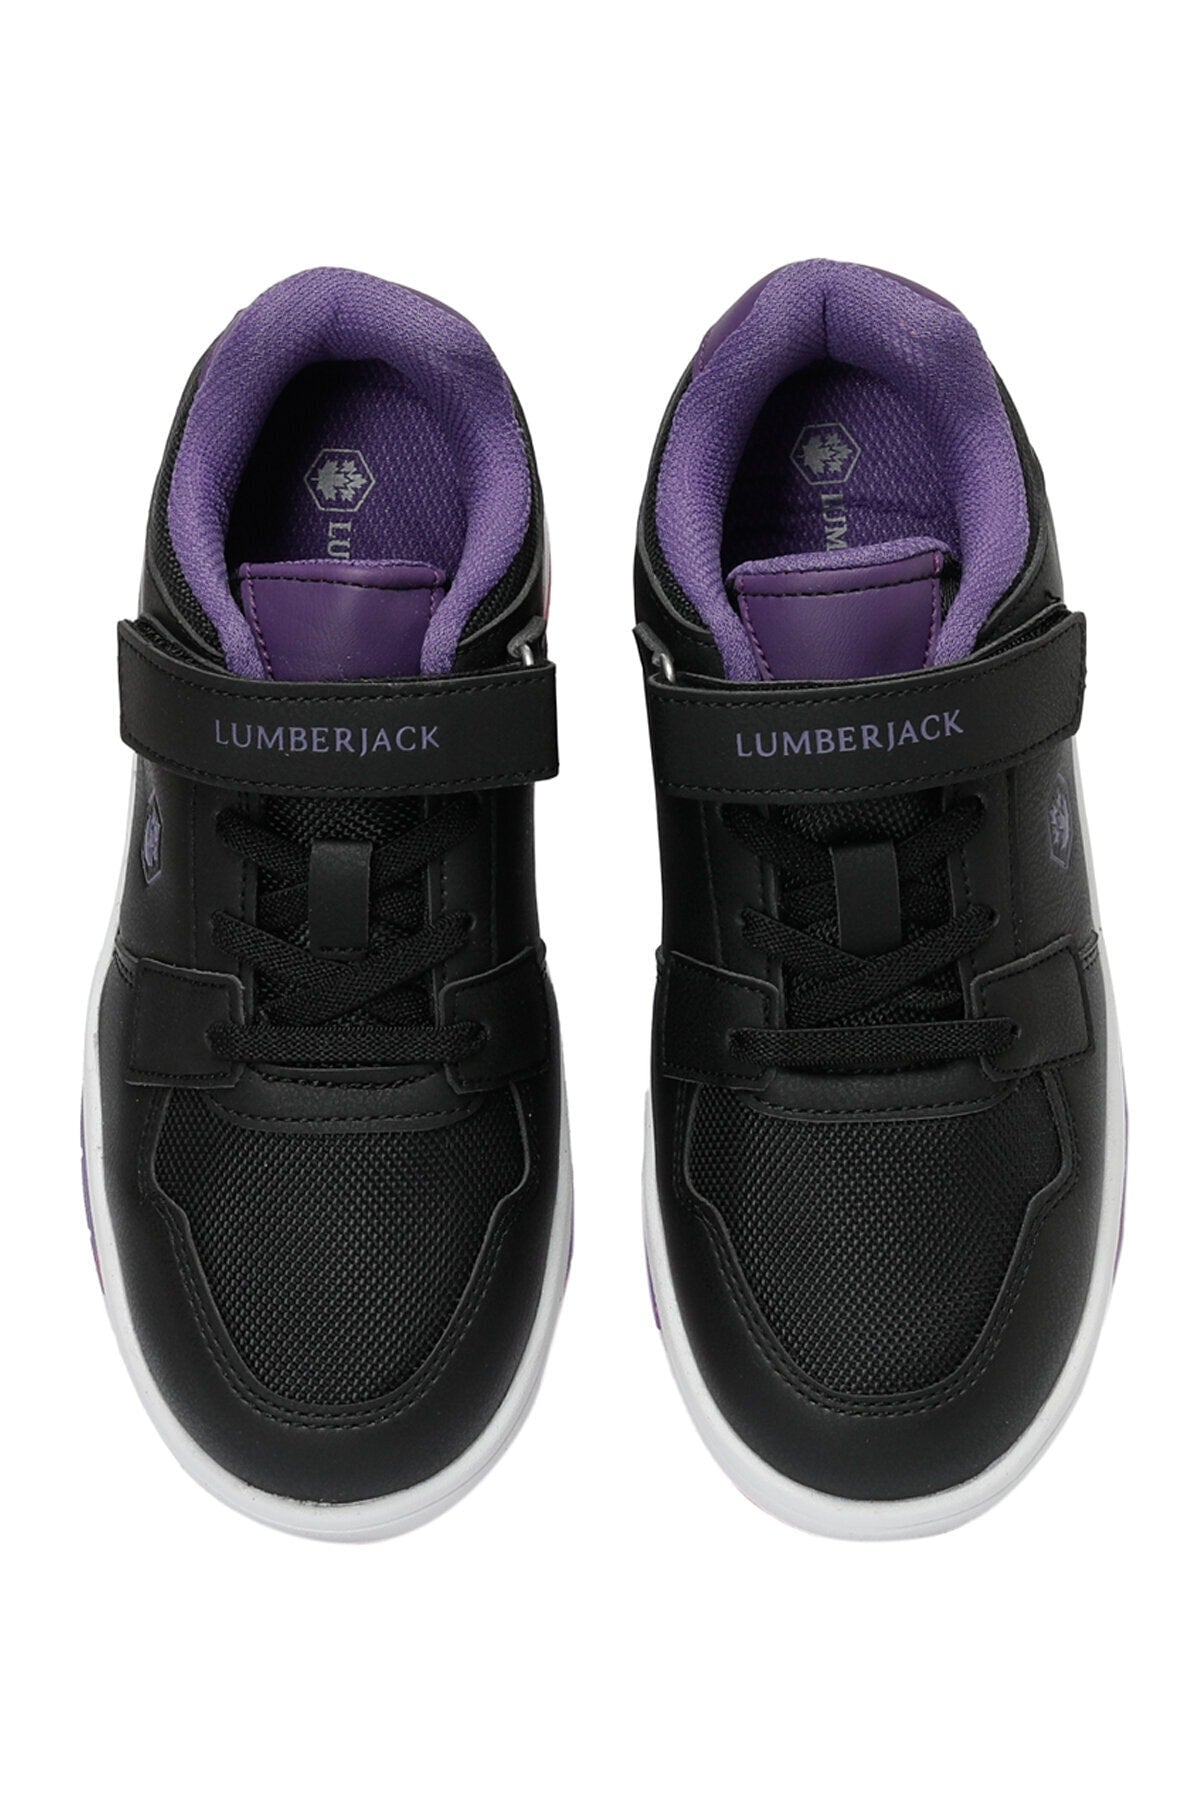 SAKE 3FX Black Girls' Sneaker